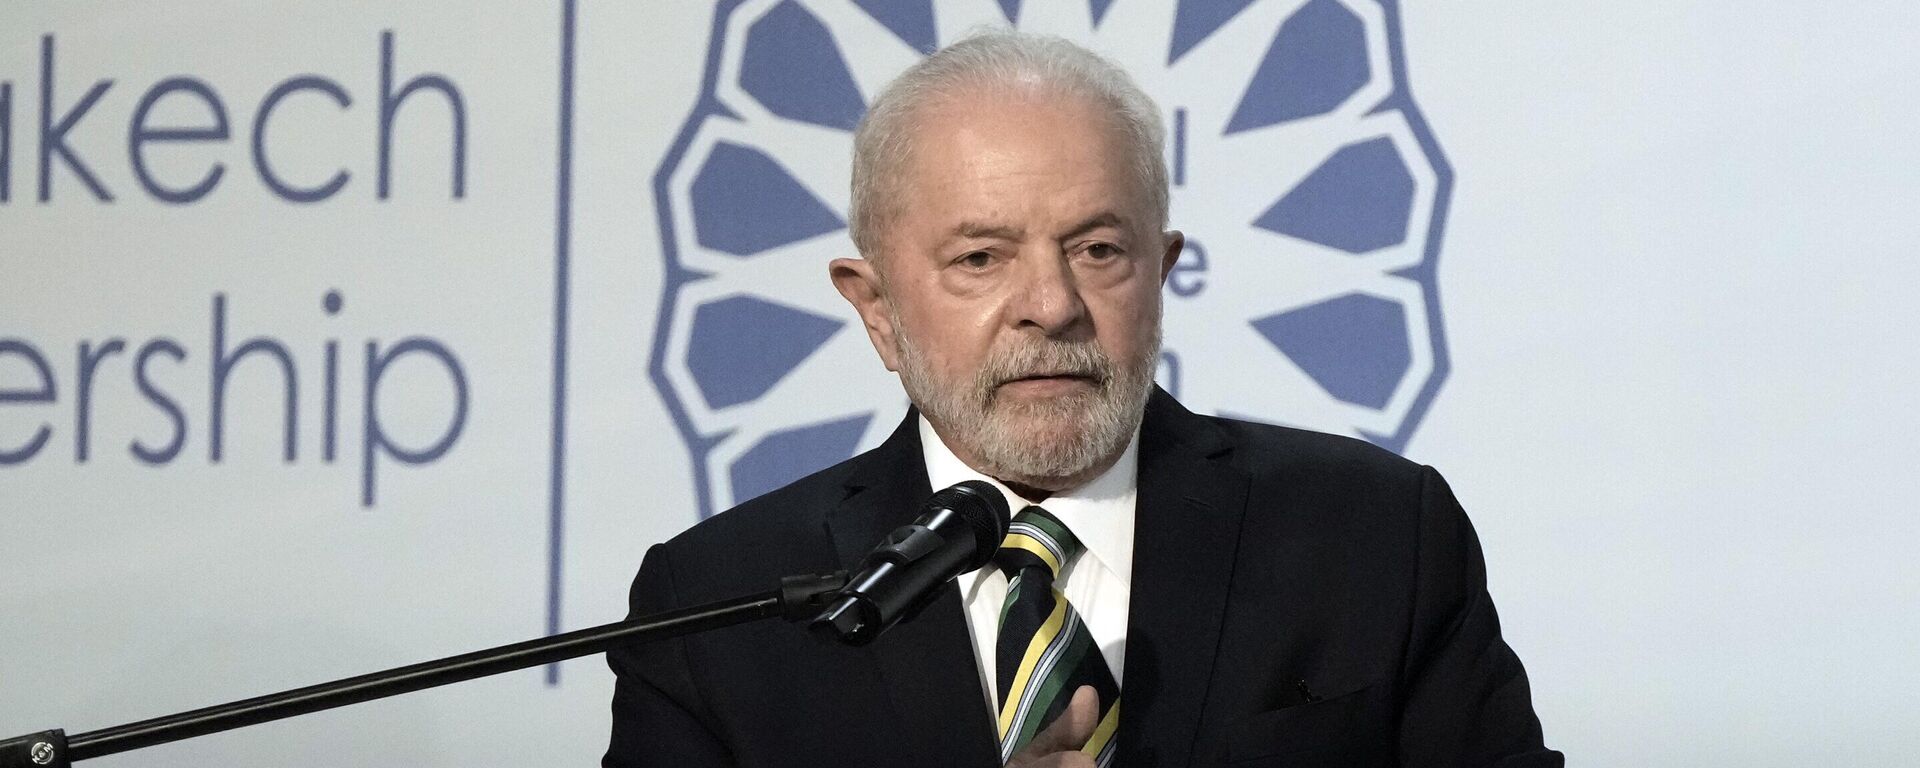 O presidente eleito do Brasil, Luiz Inácio Lula da Silva, fala na COP27, a cúpula do clima das Nações Unidas, em 16 de novembro de 2022, em Sharm el-Sheikh, no Egito - Sputnik Brasil, 1920, 16.11.2022